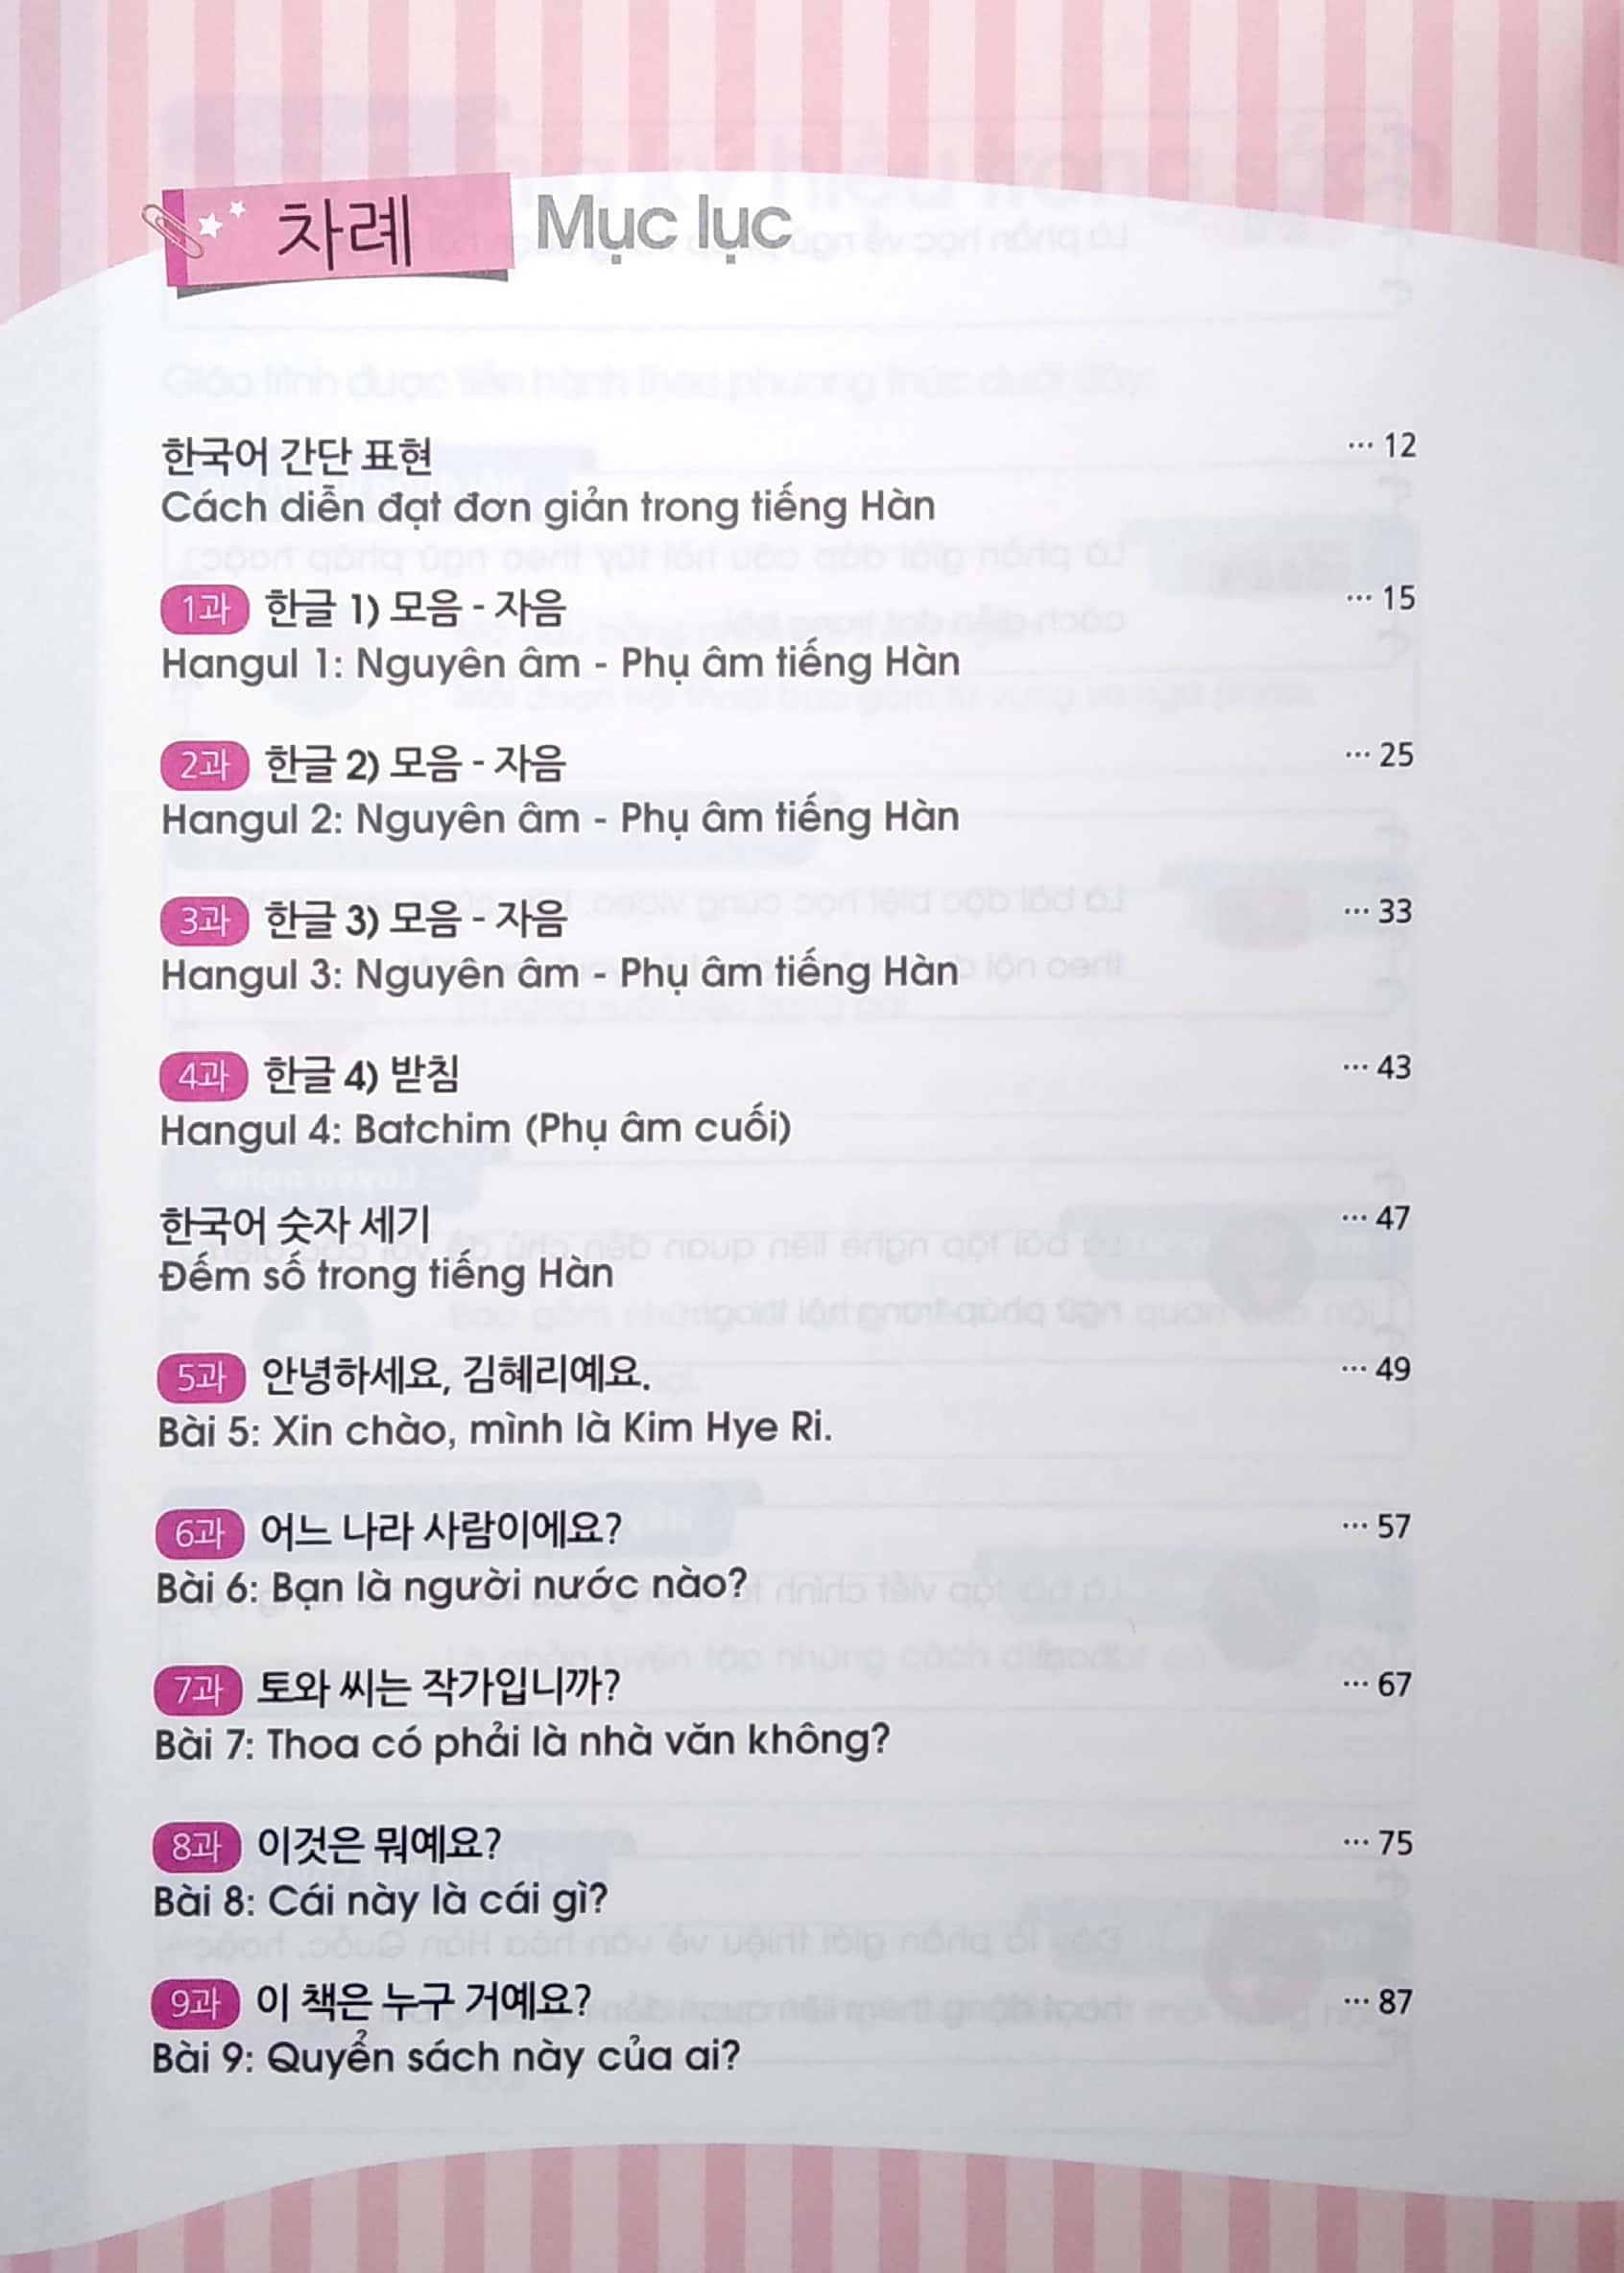 Tiếng Hàn Cơ Bản Cùng Cheri Hyeri PDF